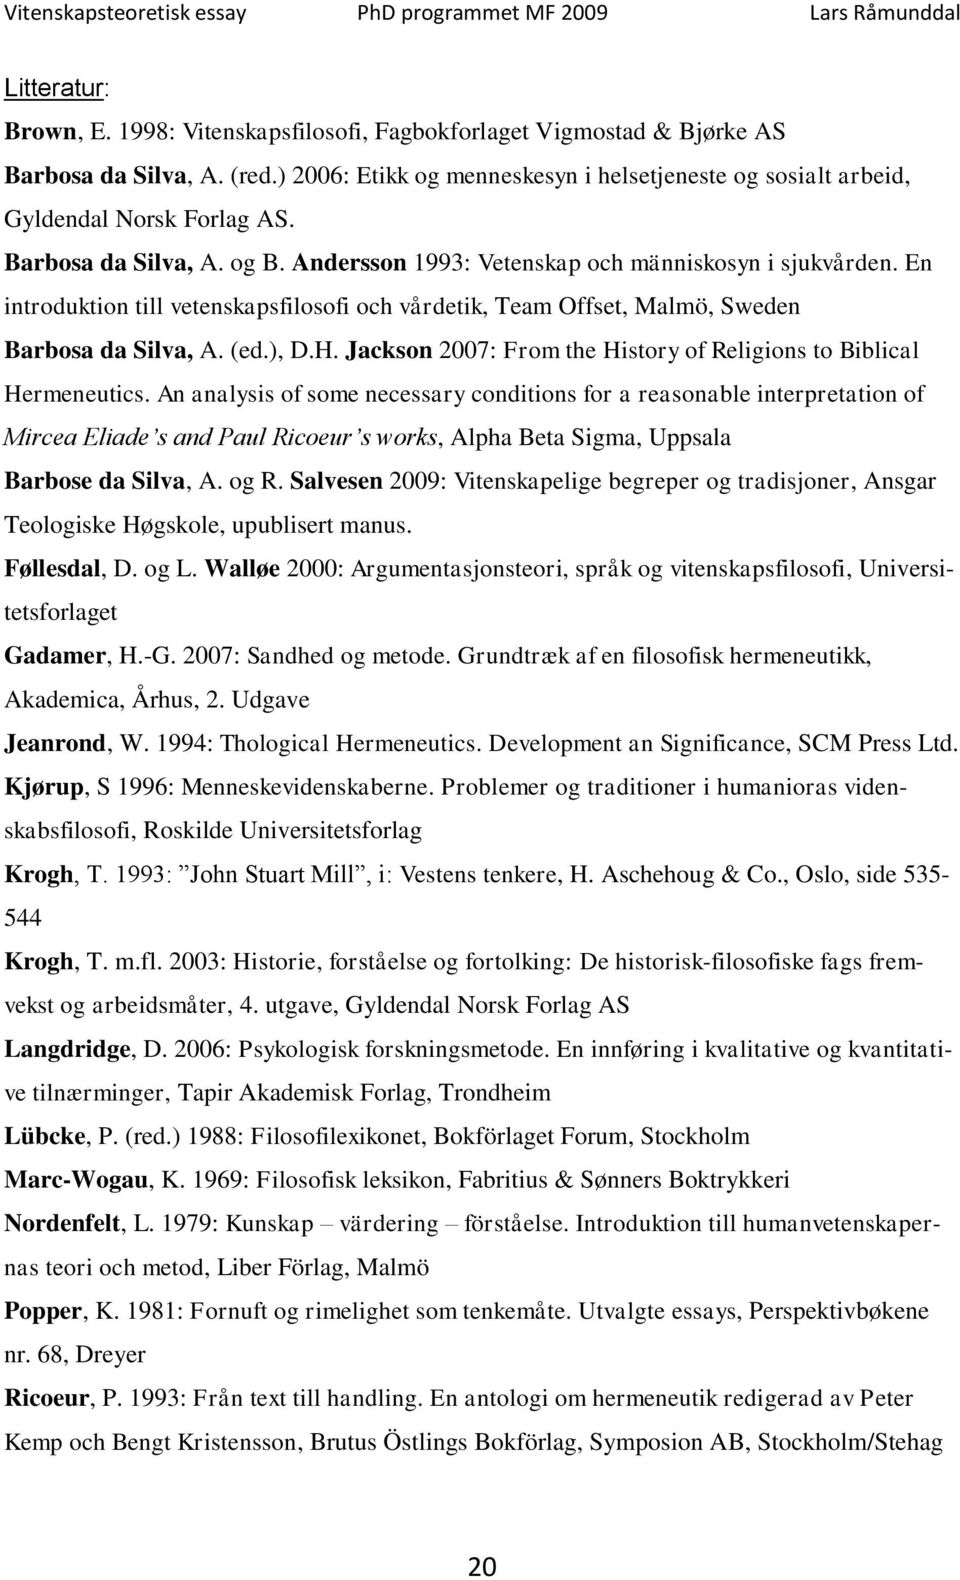 En introduktion till vetenskapsfilosofi och vårdetik, Team Offset, Malmö, Sweden Barbosa da Silva, A. (ed.), D.H. Jackson 2007: From the History of Religions to Biblical Hermeneutics.